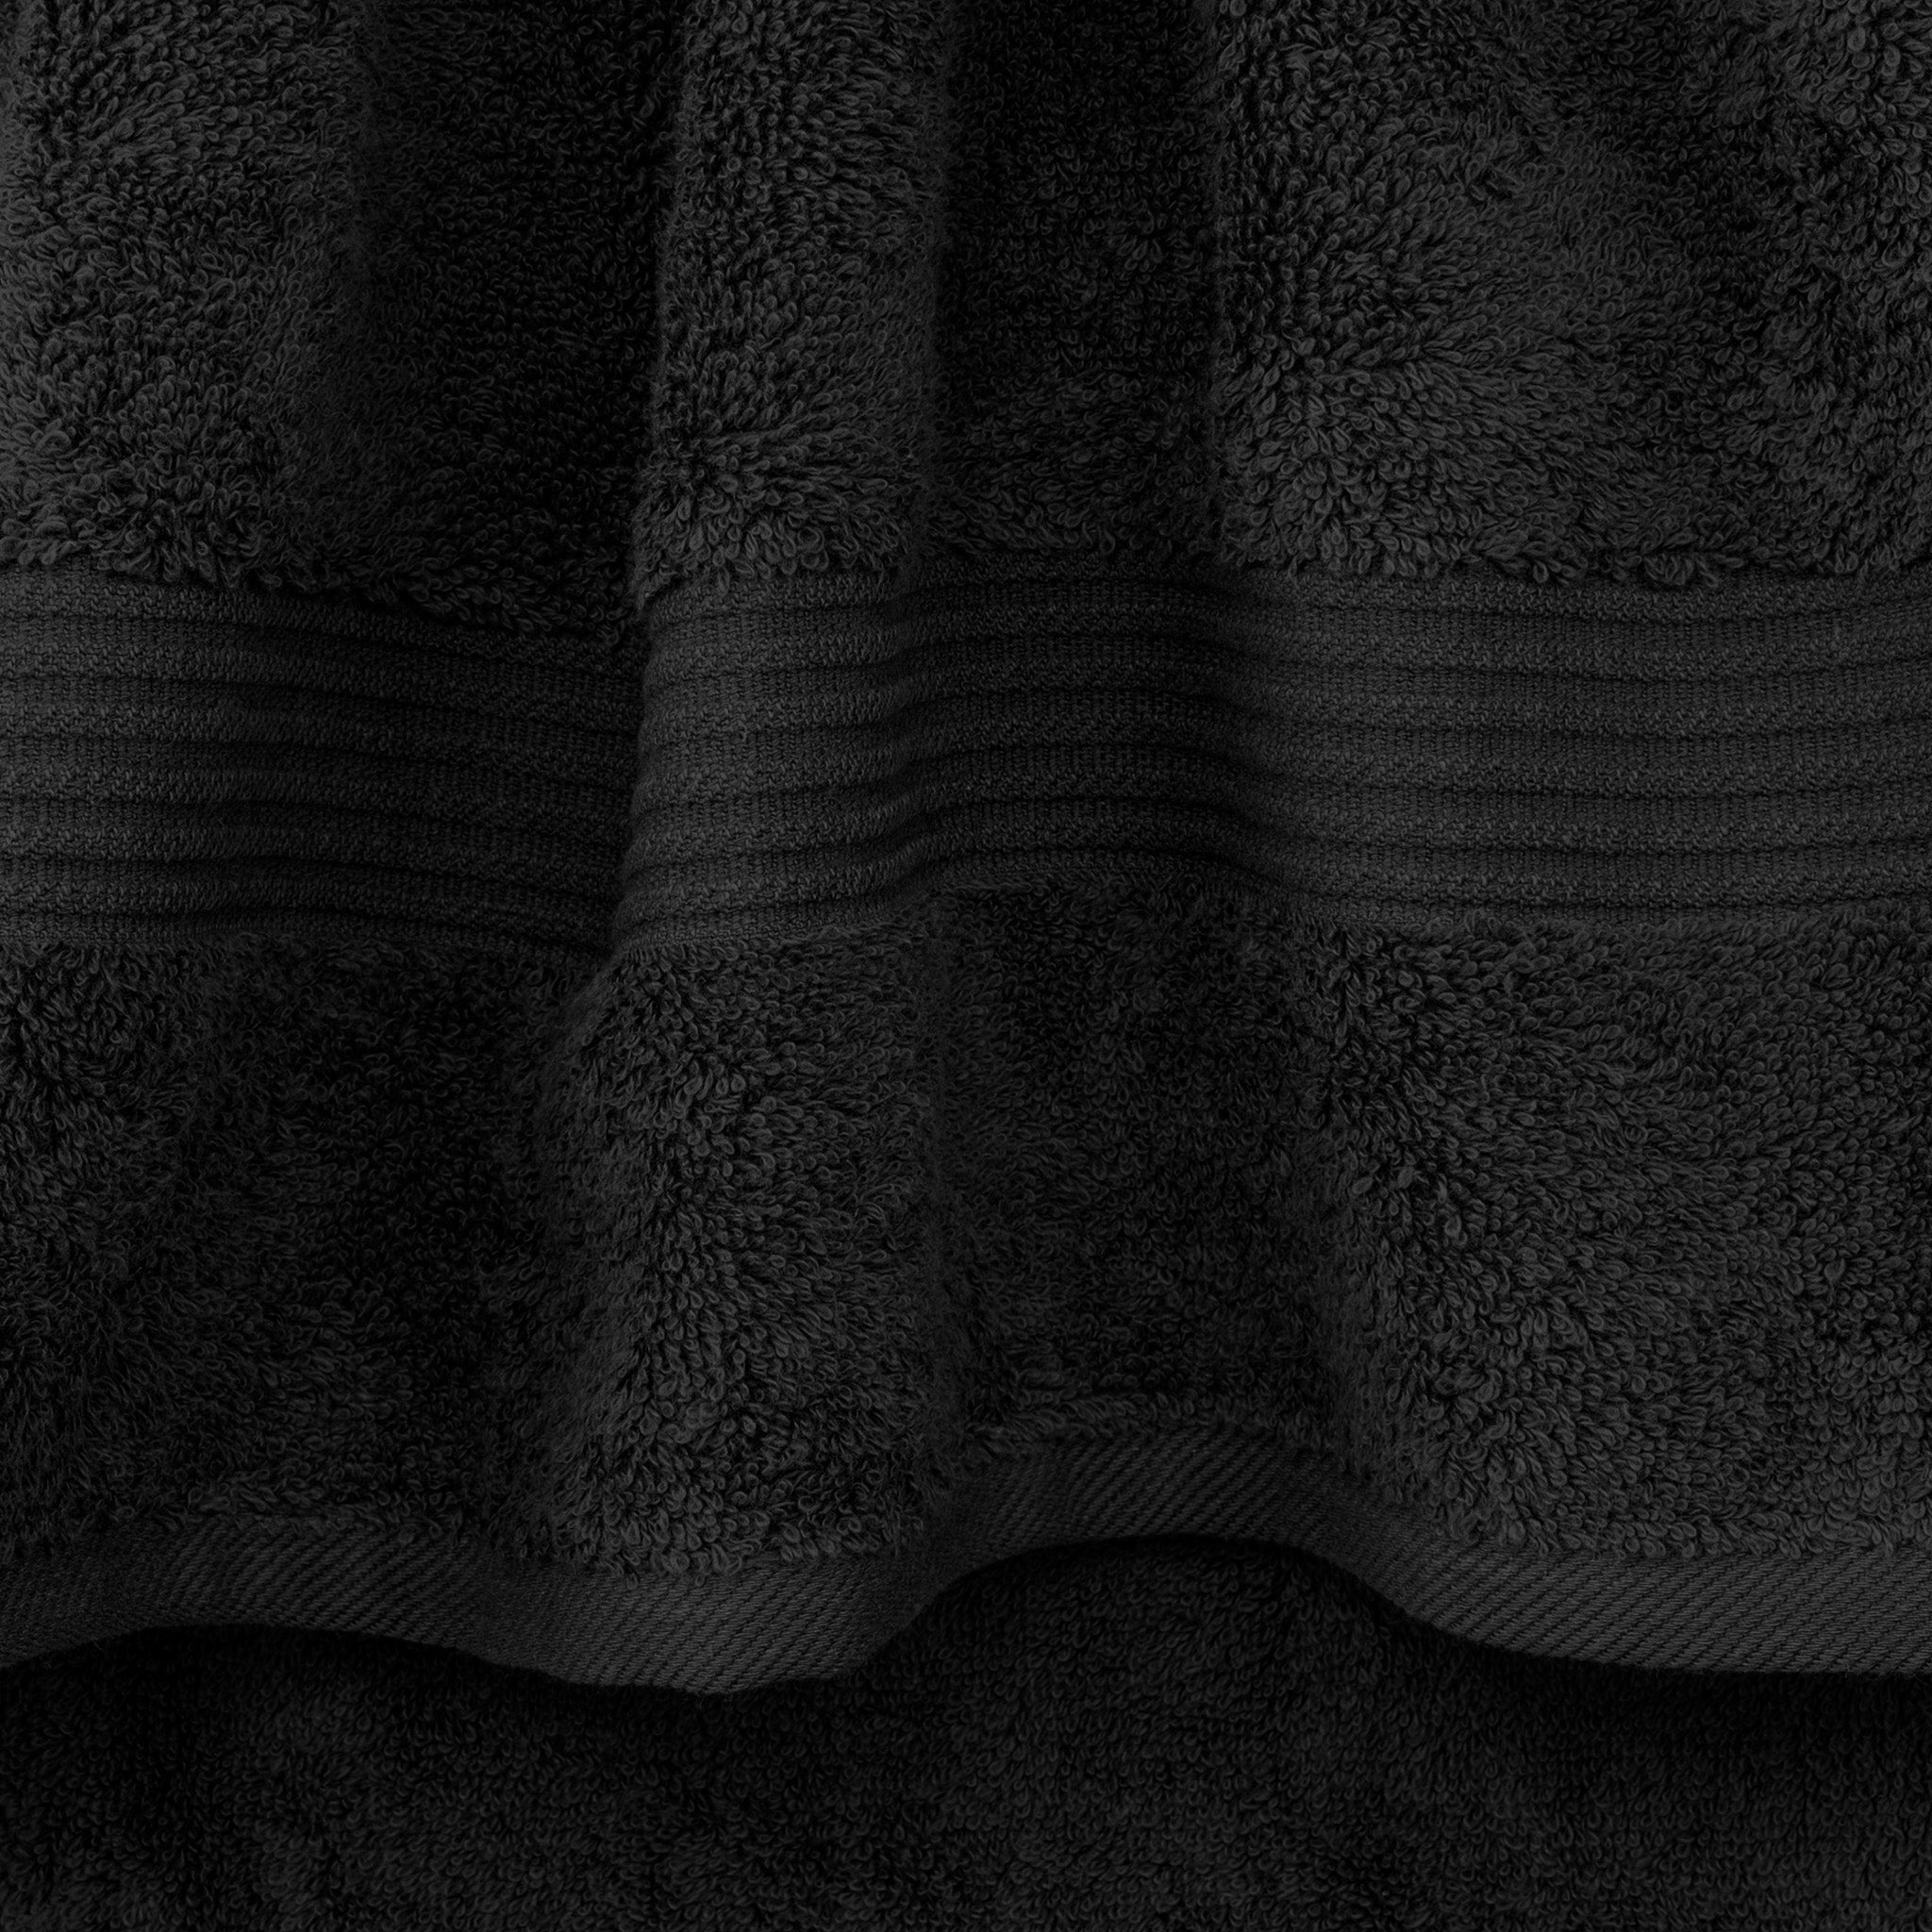 American Soft Linen Bekos 100% Cotton Turkish Towels 6 Piece Bath Towel Set -black-03